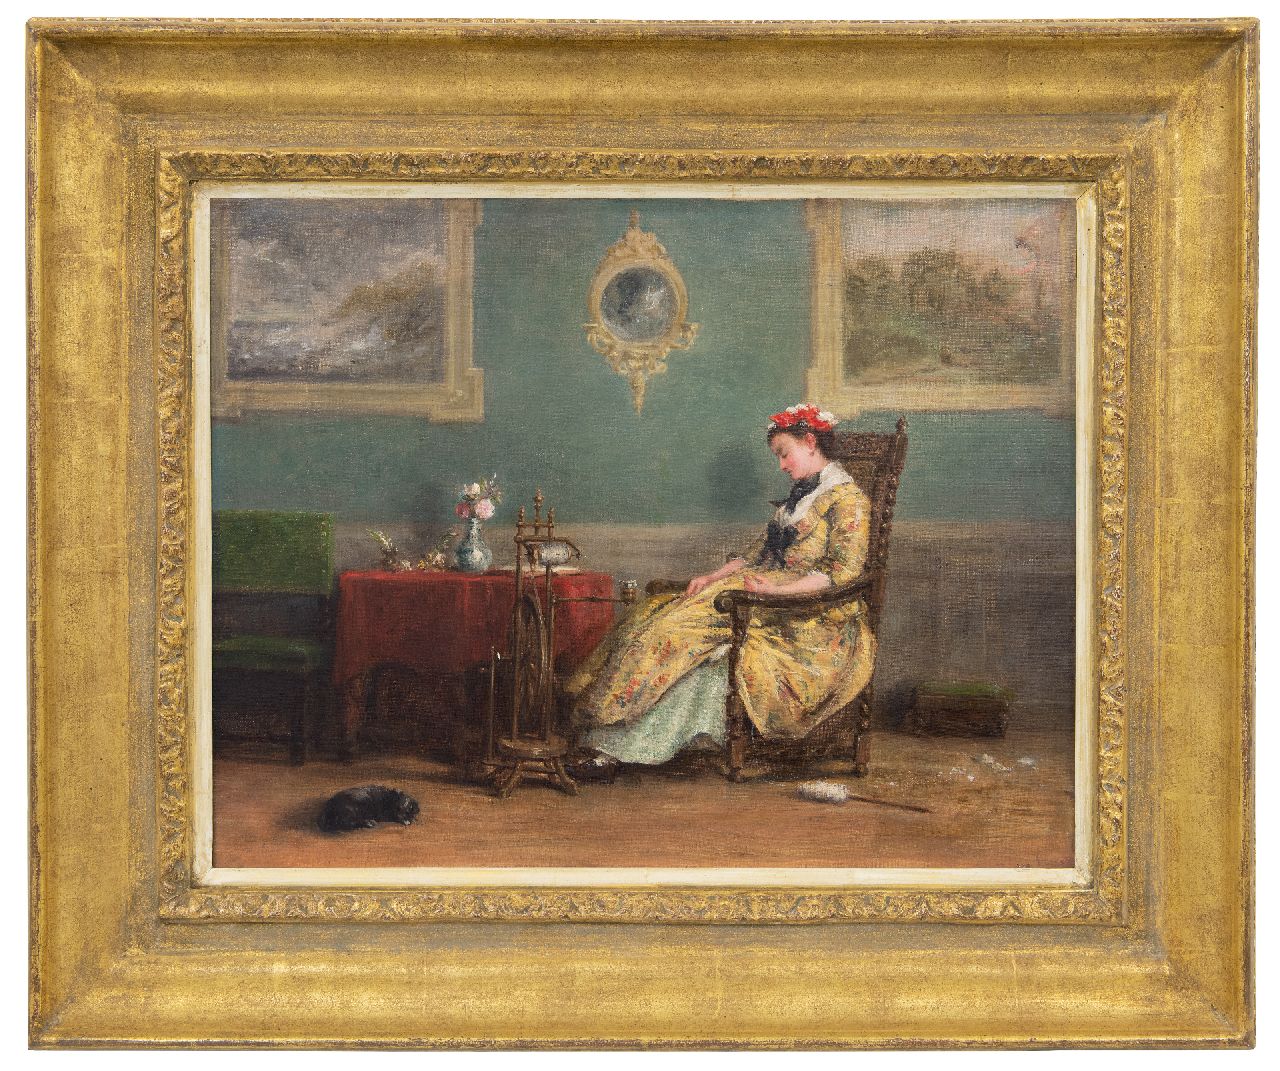 Bles D.J.  | David Joseph Bles | Schilderijen te koop aangeboden | Le Repos, olieverf op doek 35,6 x 46,0 cm, gesigneerd rechtsonder (vaag) en gedateerd 1846